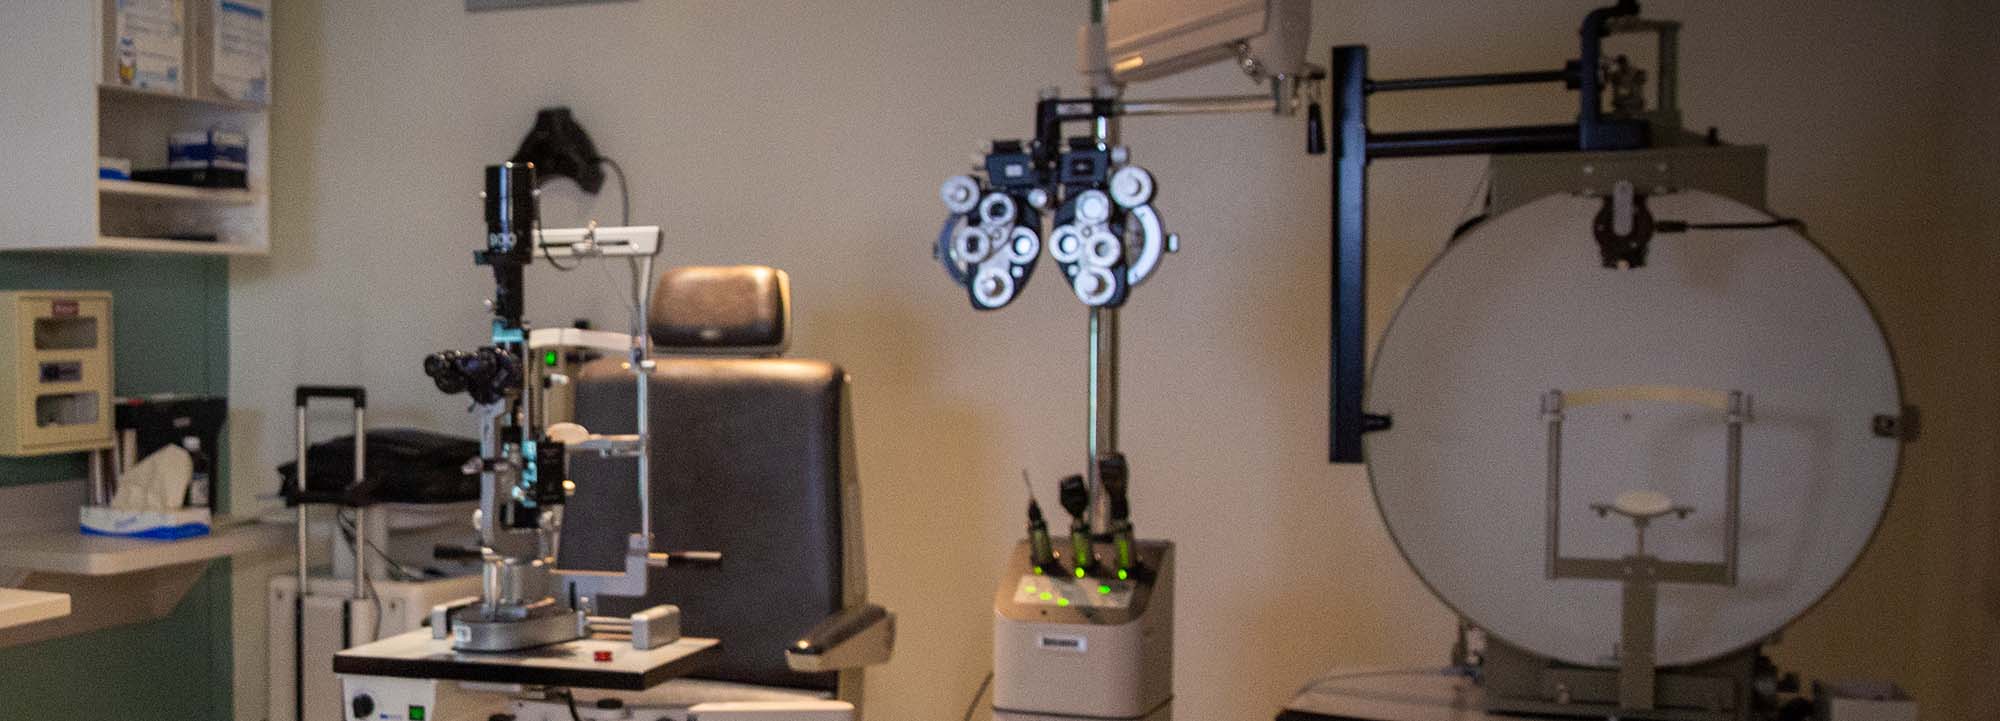 Equipamento de oftalmologia em uma clínica oftalmológica